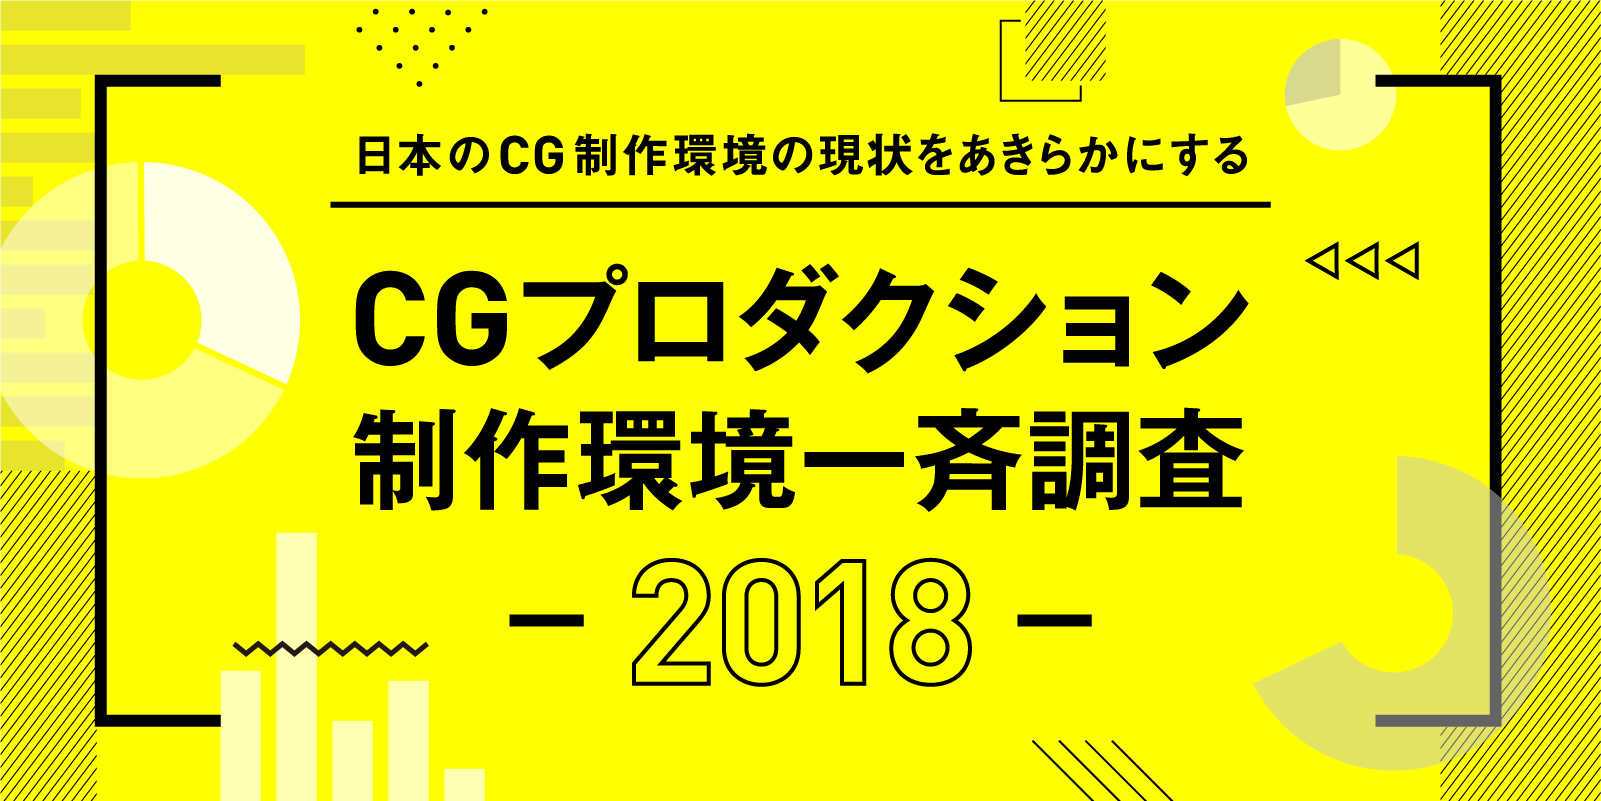 日本のCG制作環境の現状をあきらかにする<br/>CGプロダクション 制作環境一斉調査2018